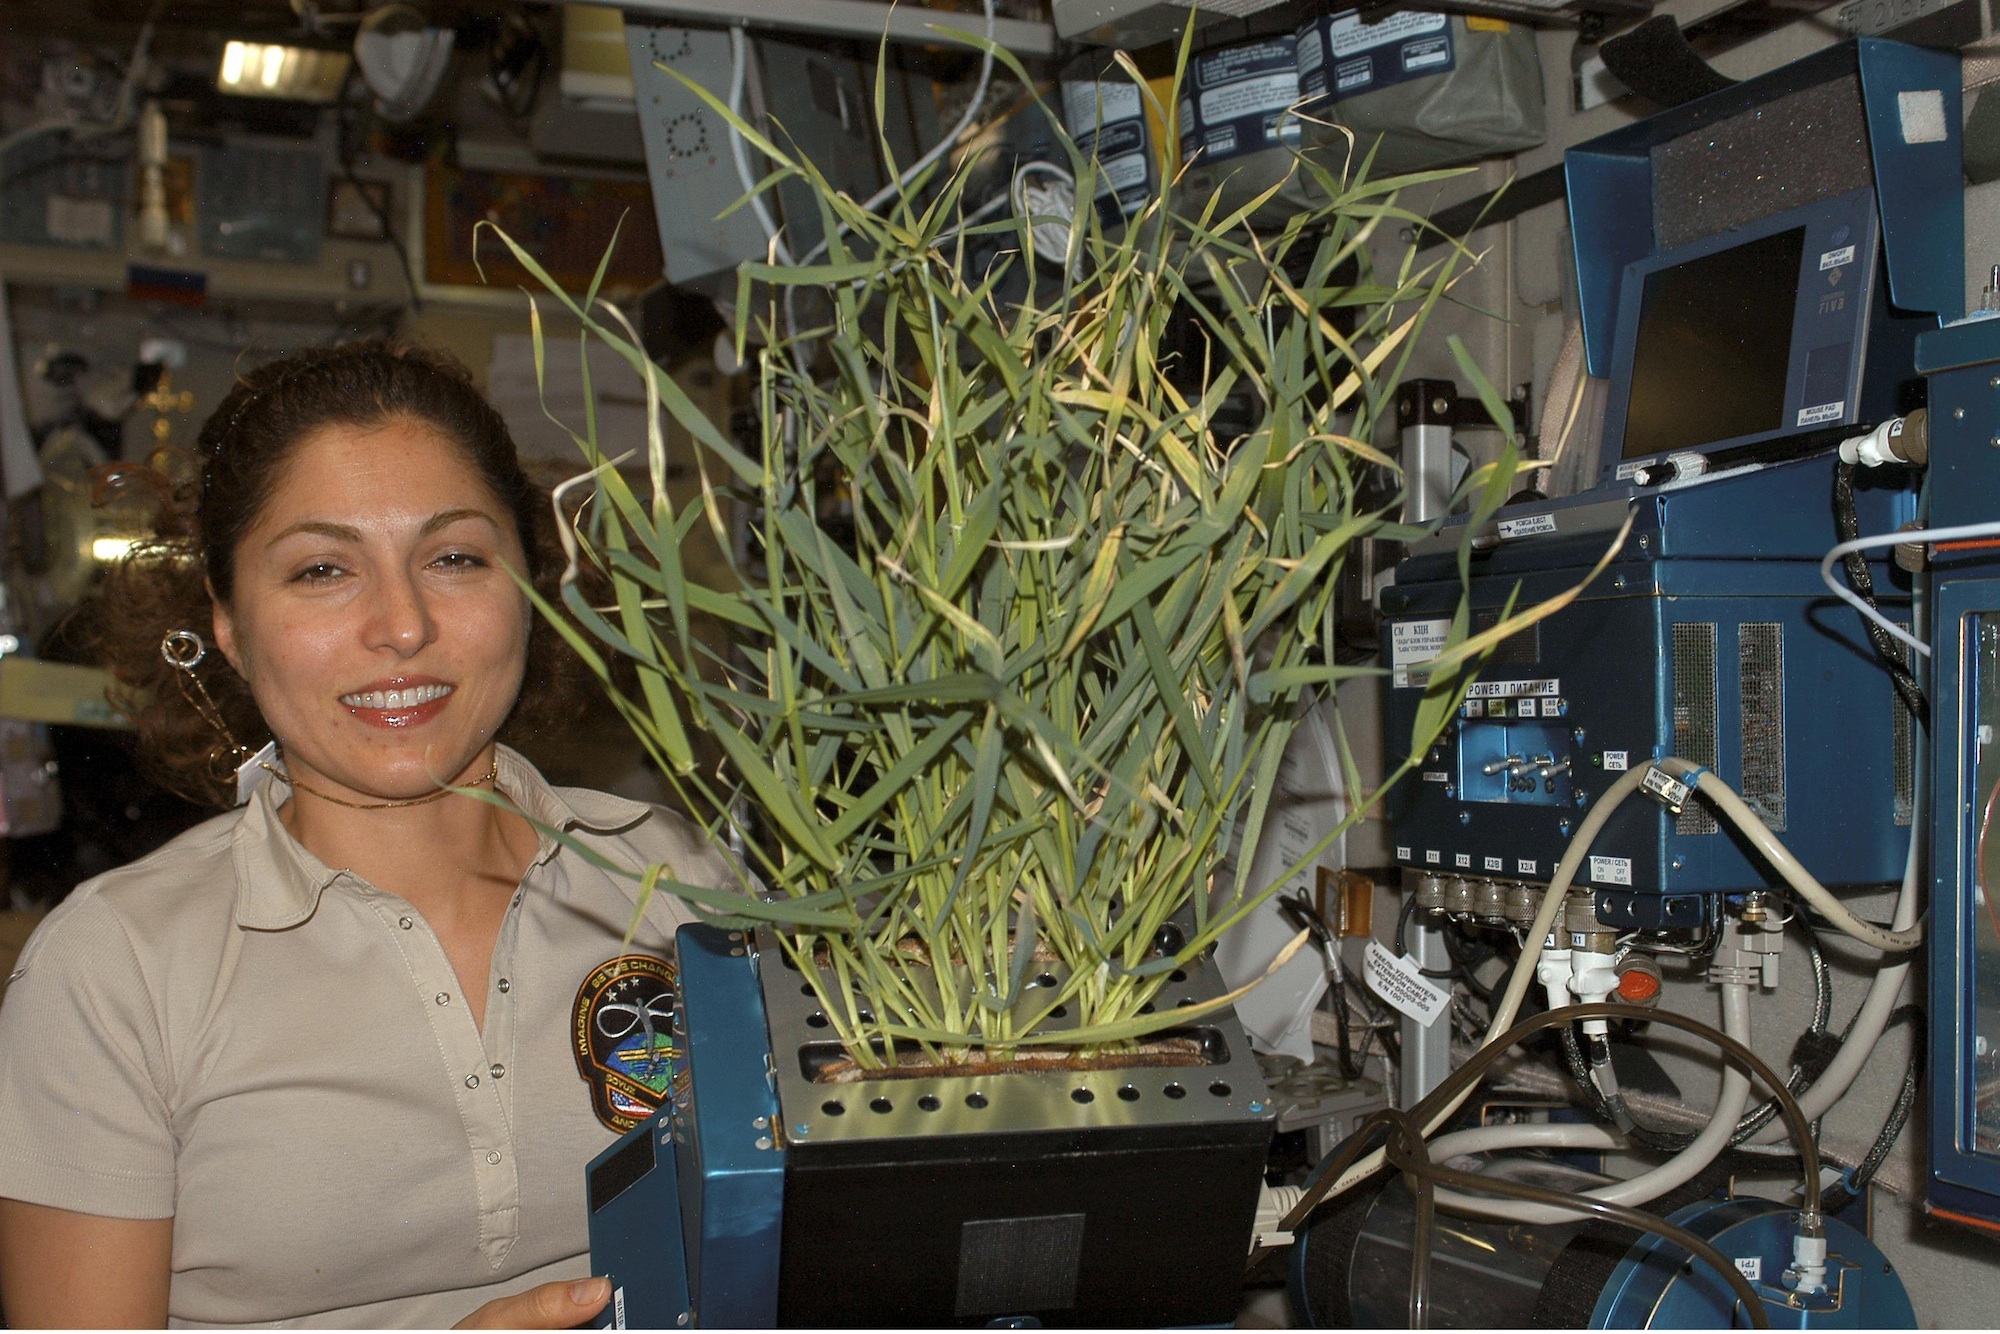 Какой овощ вырастили на космической станции. Оранжерея Veggie МКС. Опыты с растениями на МКС (Международная Космическая станция). Космическая оранжерея МКС. Растения на космической станции.